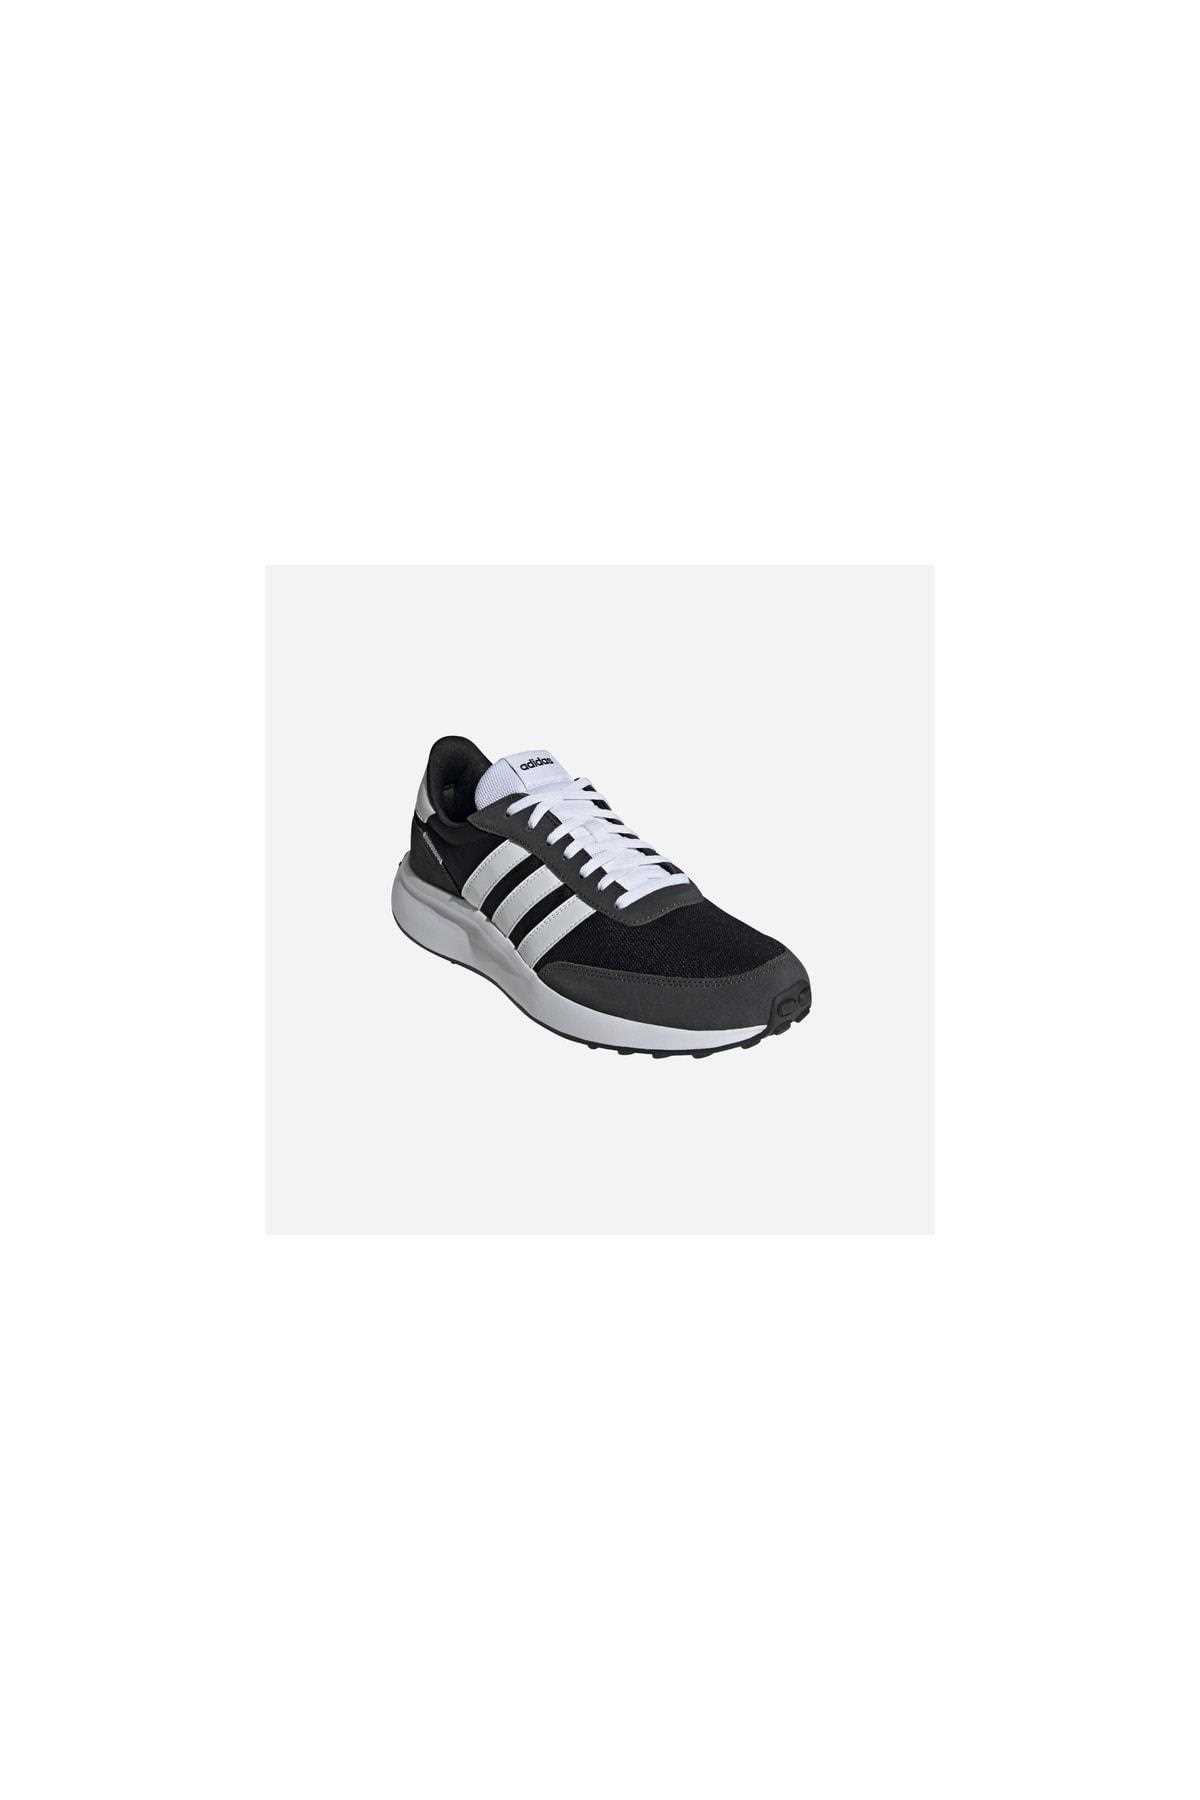 خرید کفش ورزشی دویدن زنانه برند adidas رنگ مشکی کد ty269599009